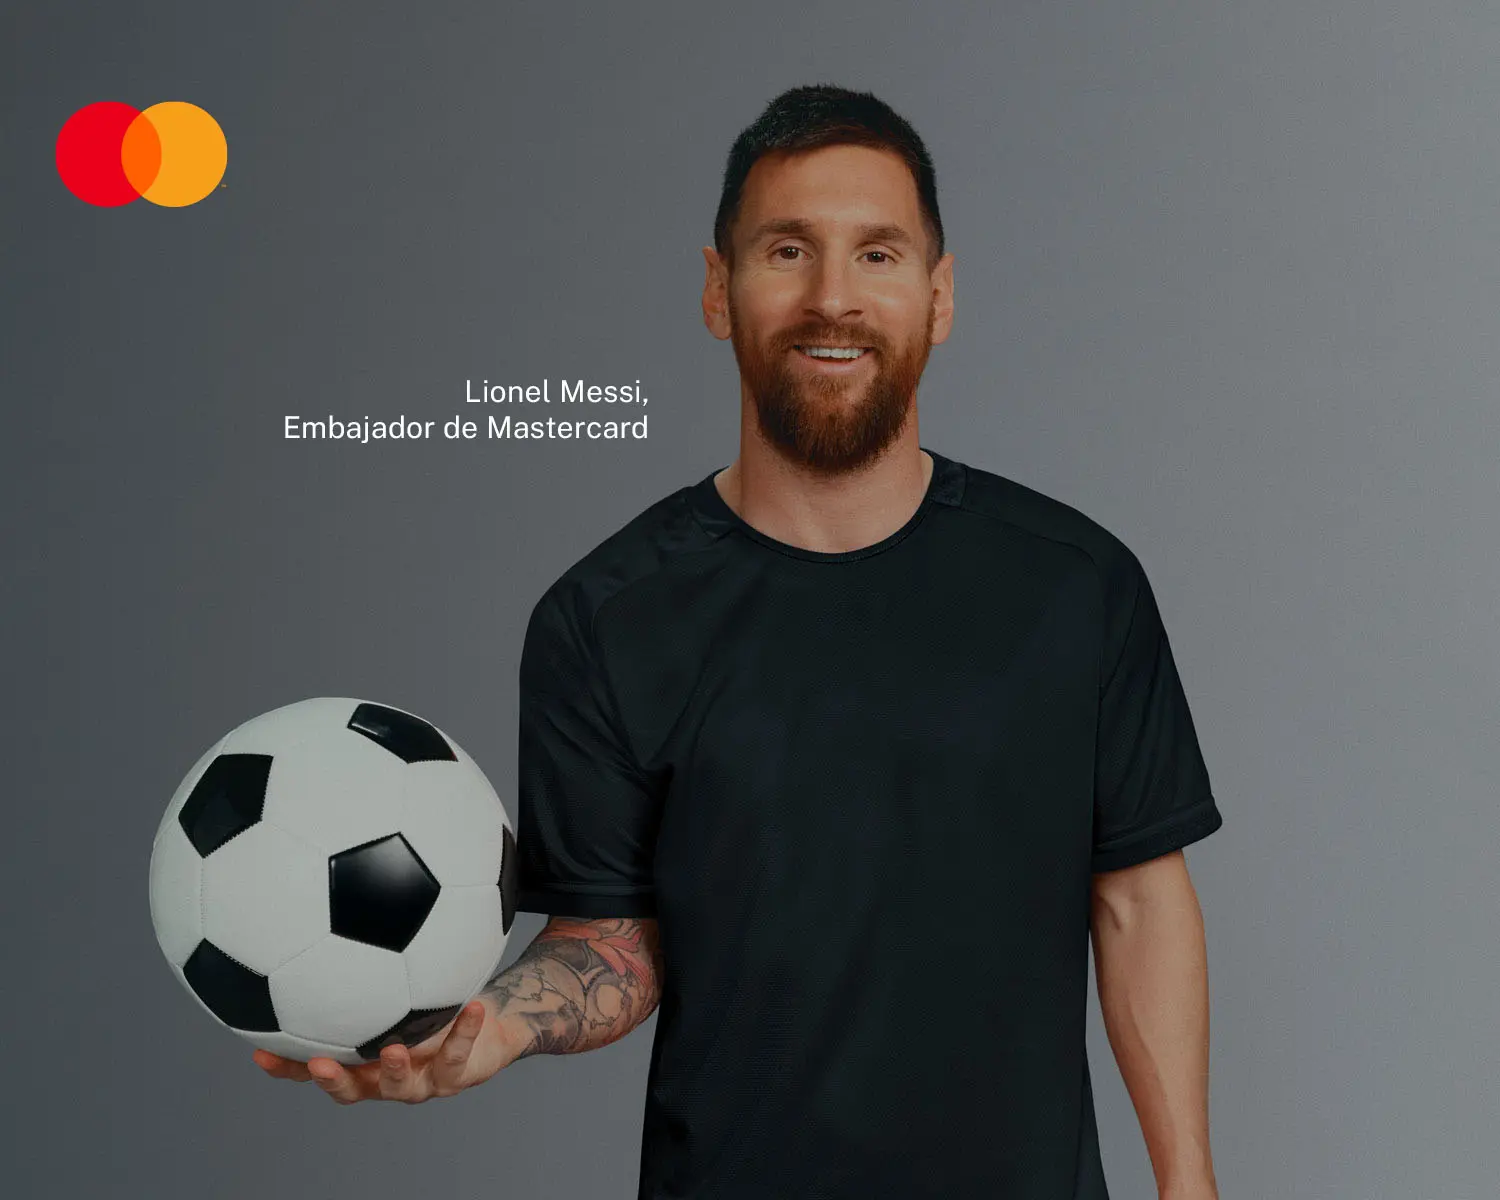 Imagen de Lionel Messi, Embajador de Mastercard